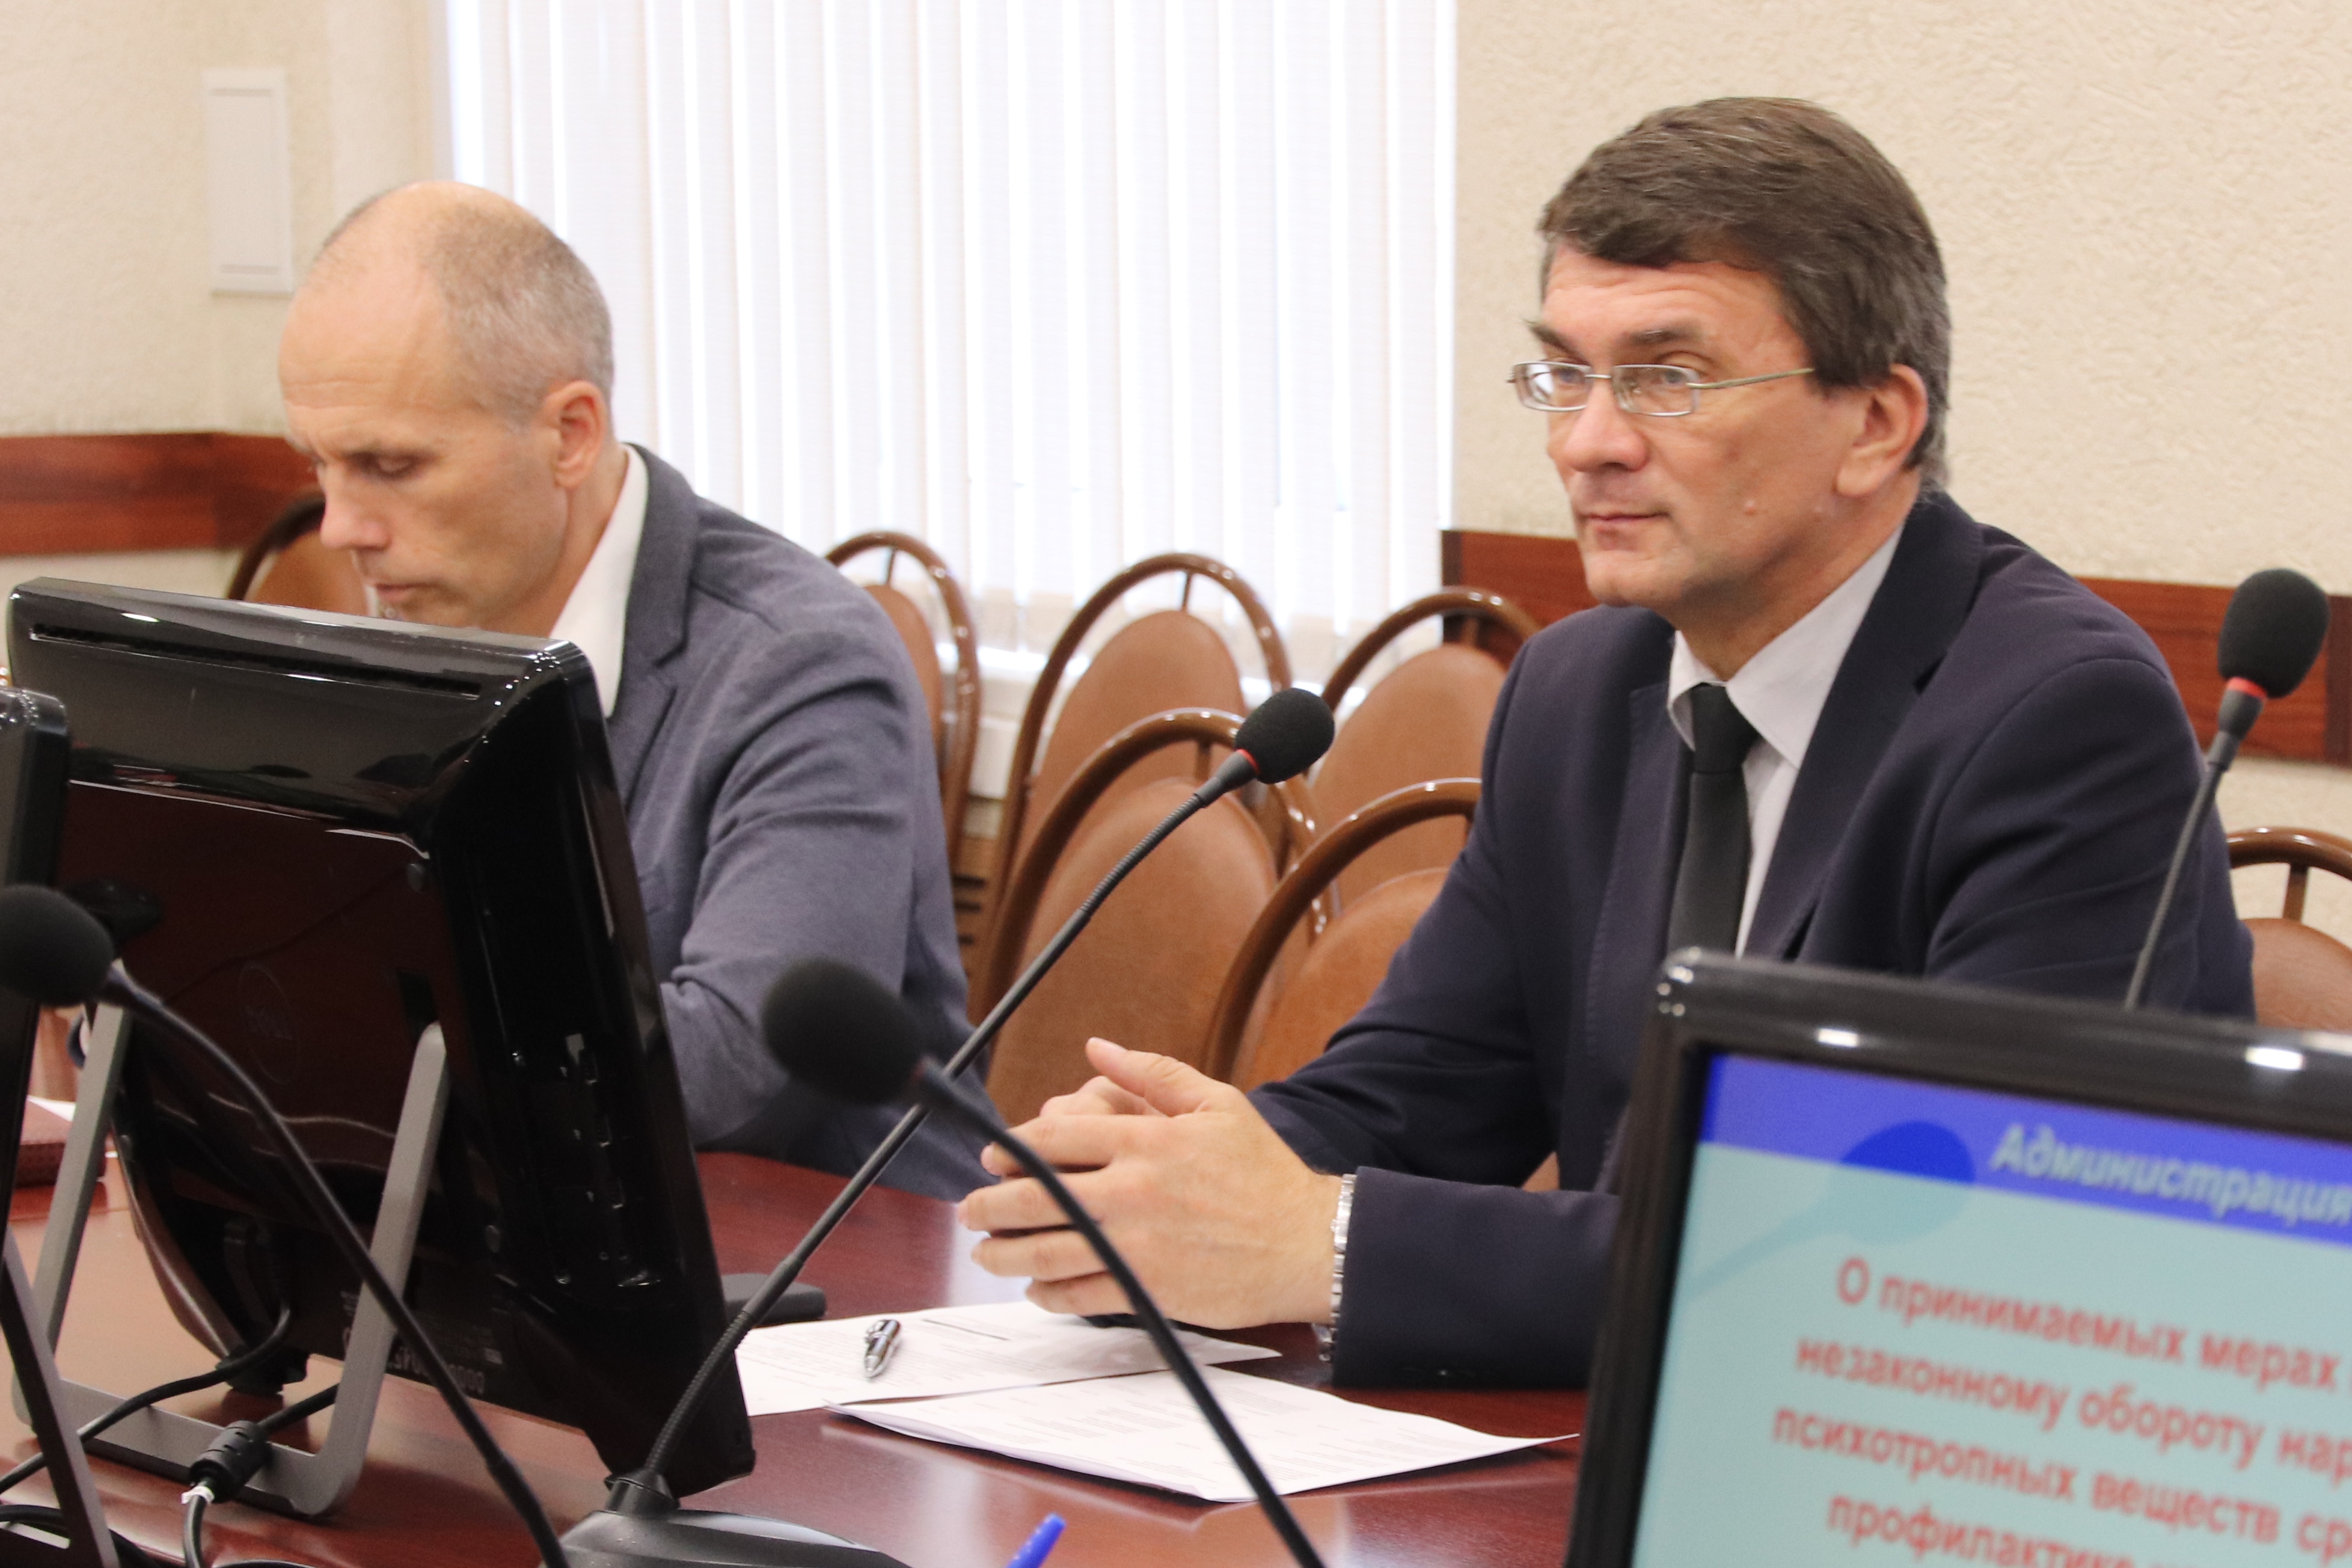 В мэрии прошло заседание комиссии по делам несовершеннолетних и защите их прав по Фрунзенскому району.